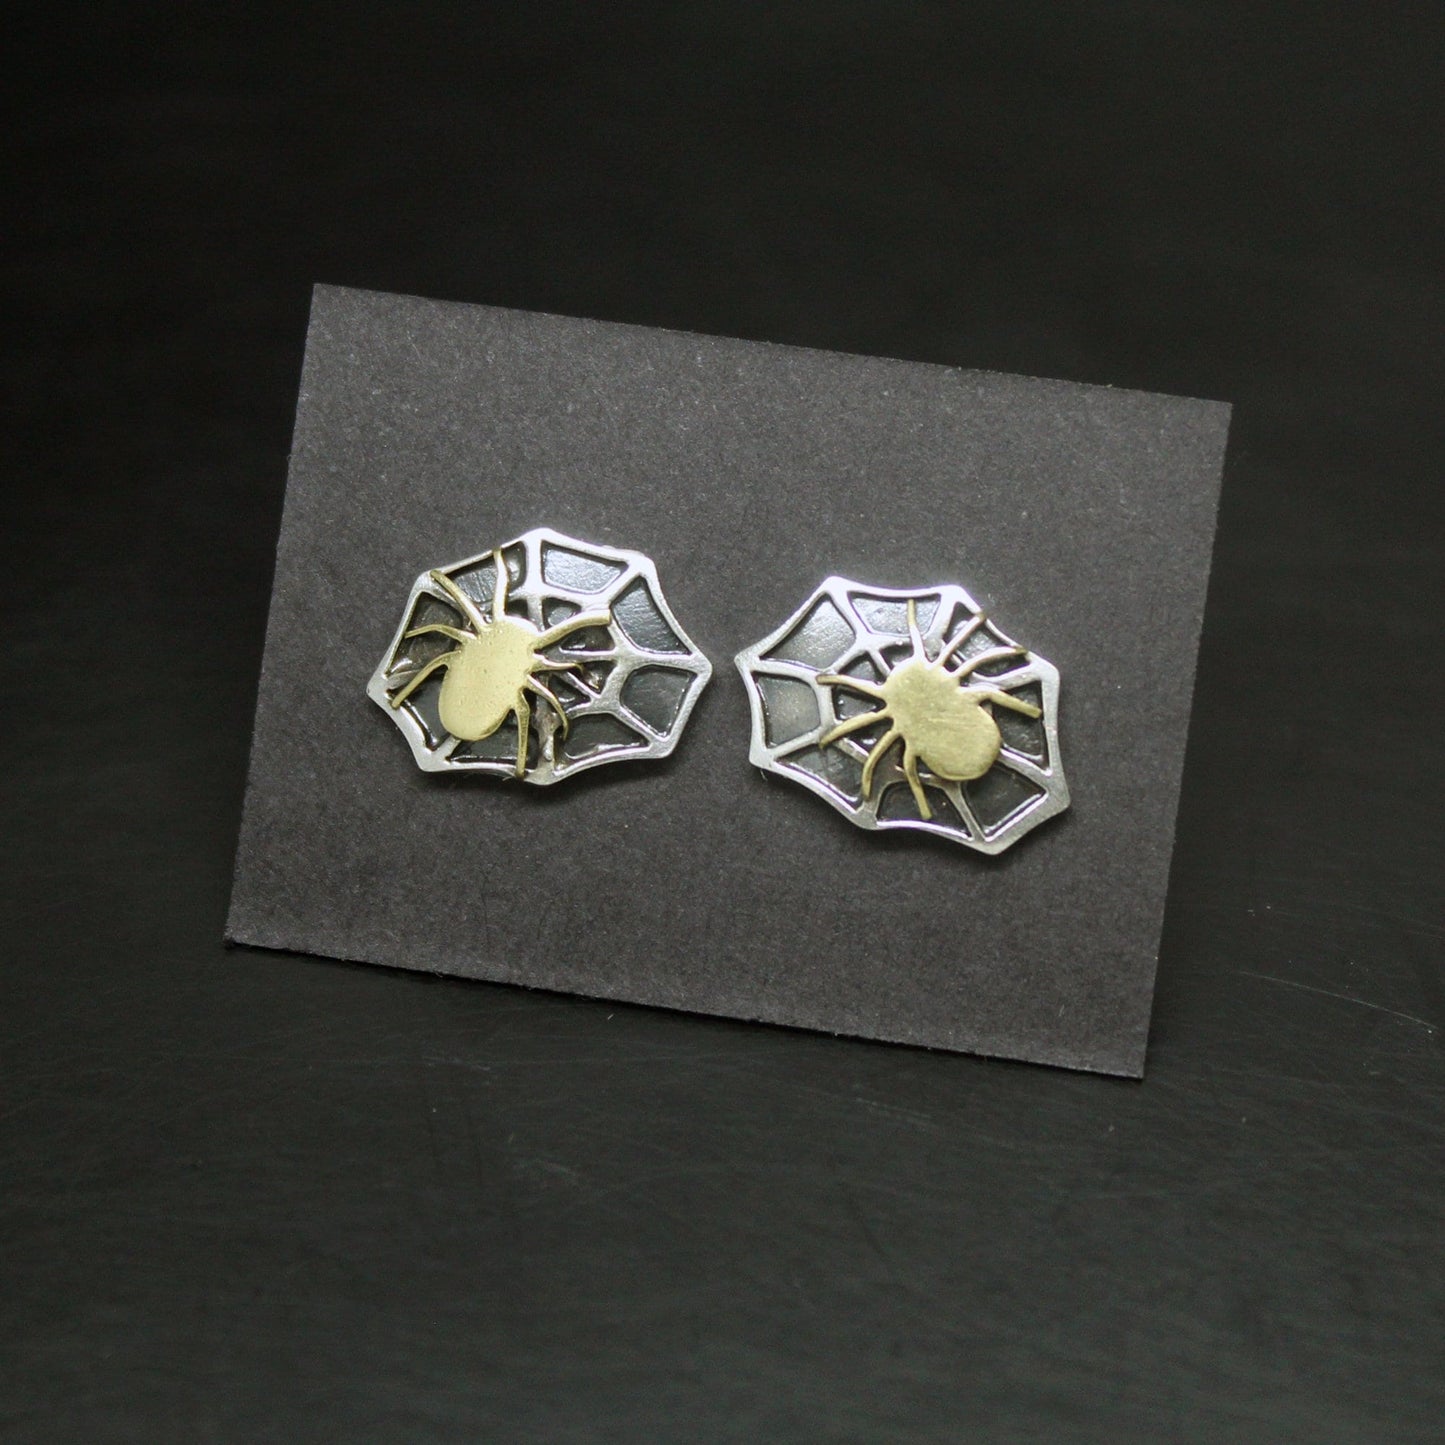 Telarañas con arañas pendientes en plata 925 y latón